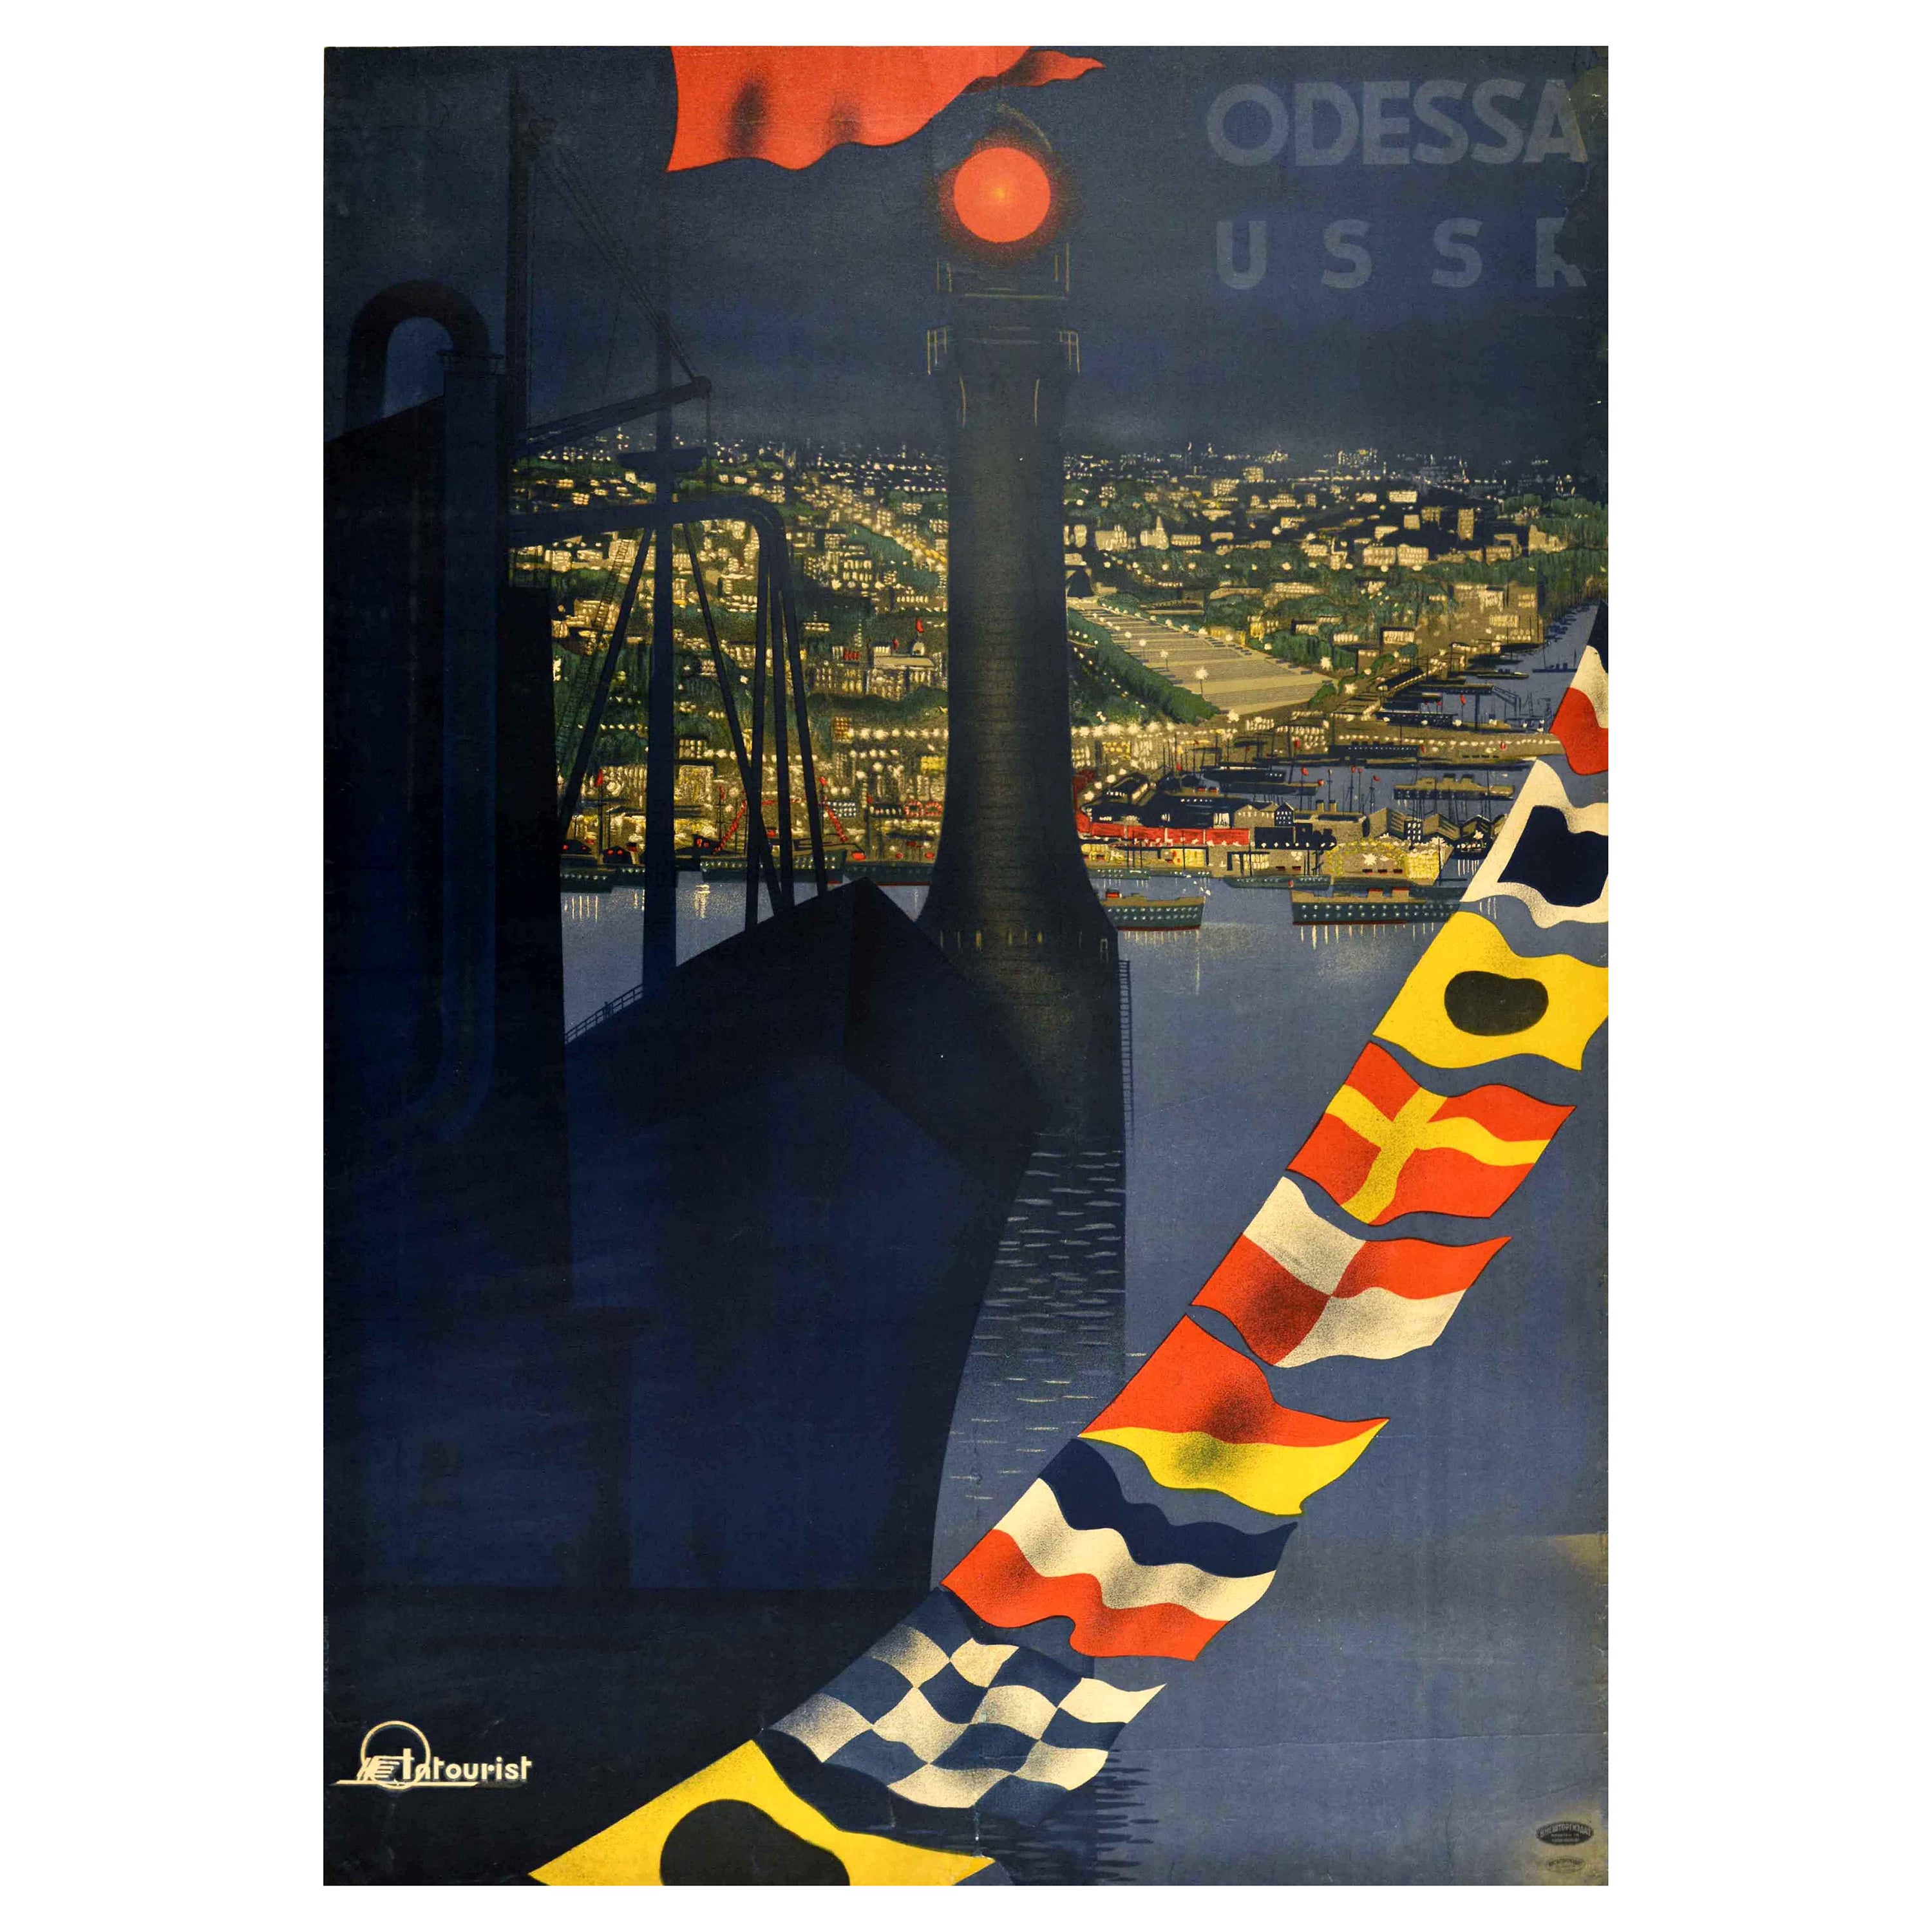 Original Vintage Intourist Poster For Odessa USSR Black Sea Port City Travel Art For Sale